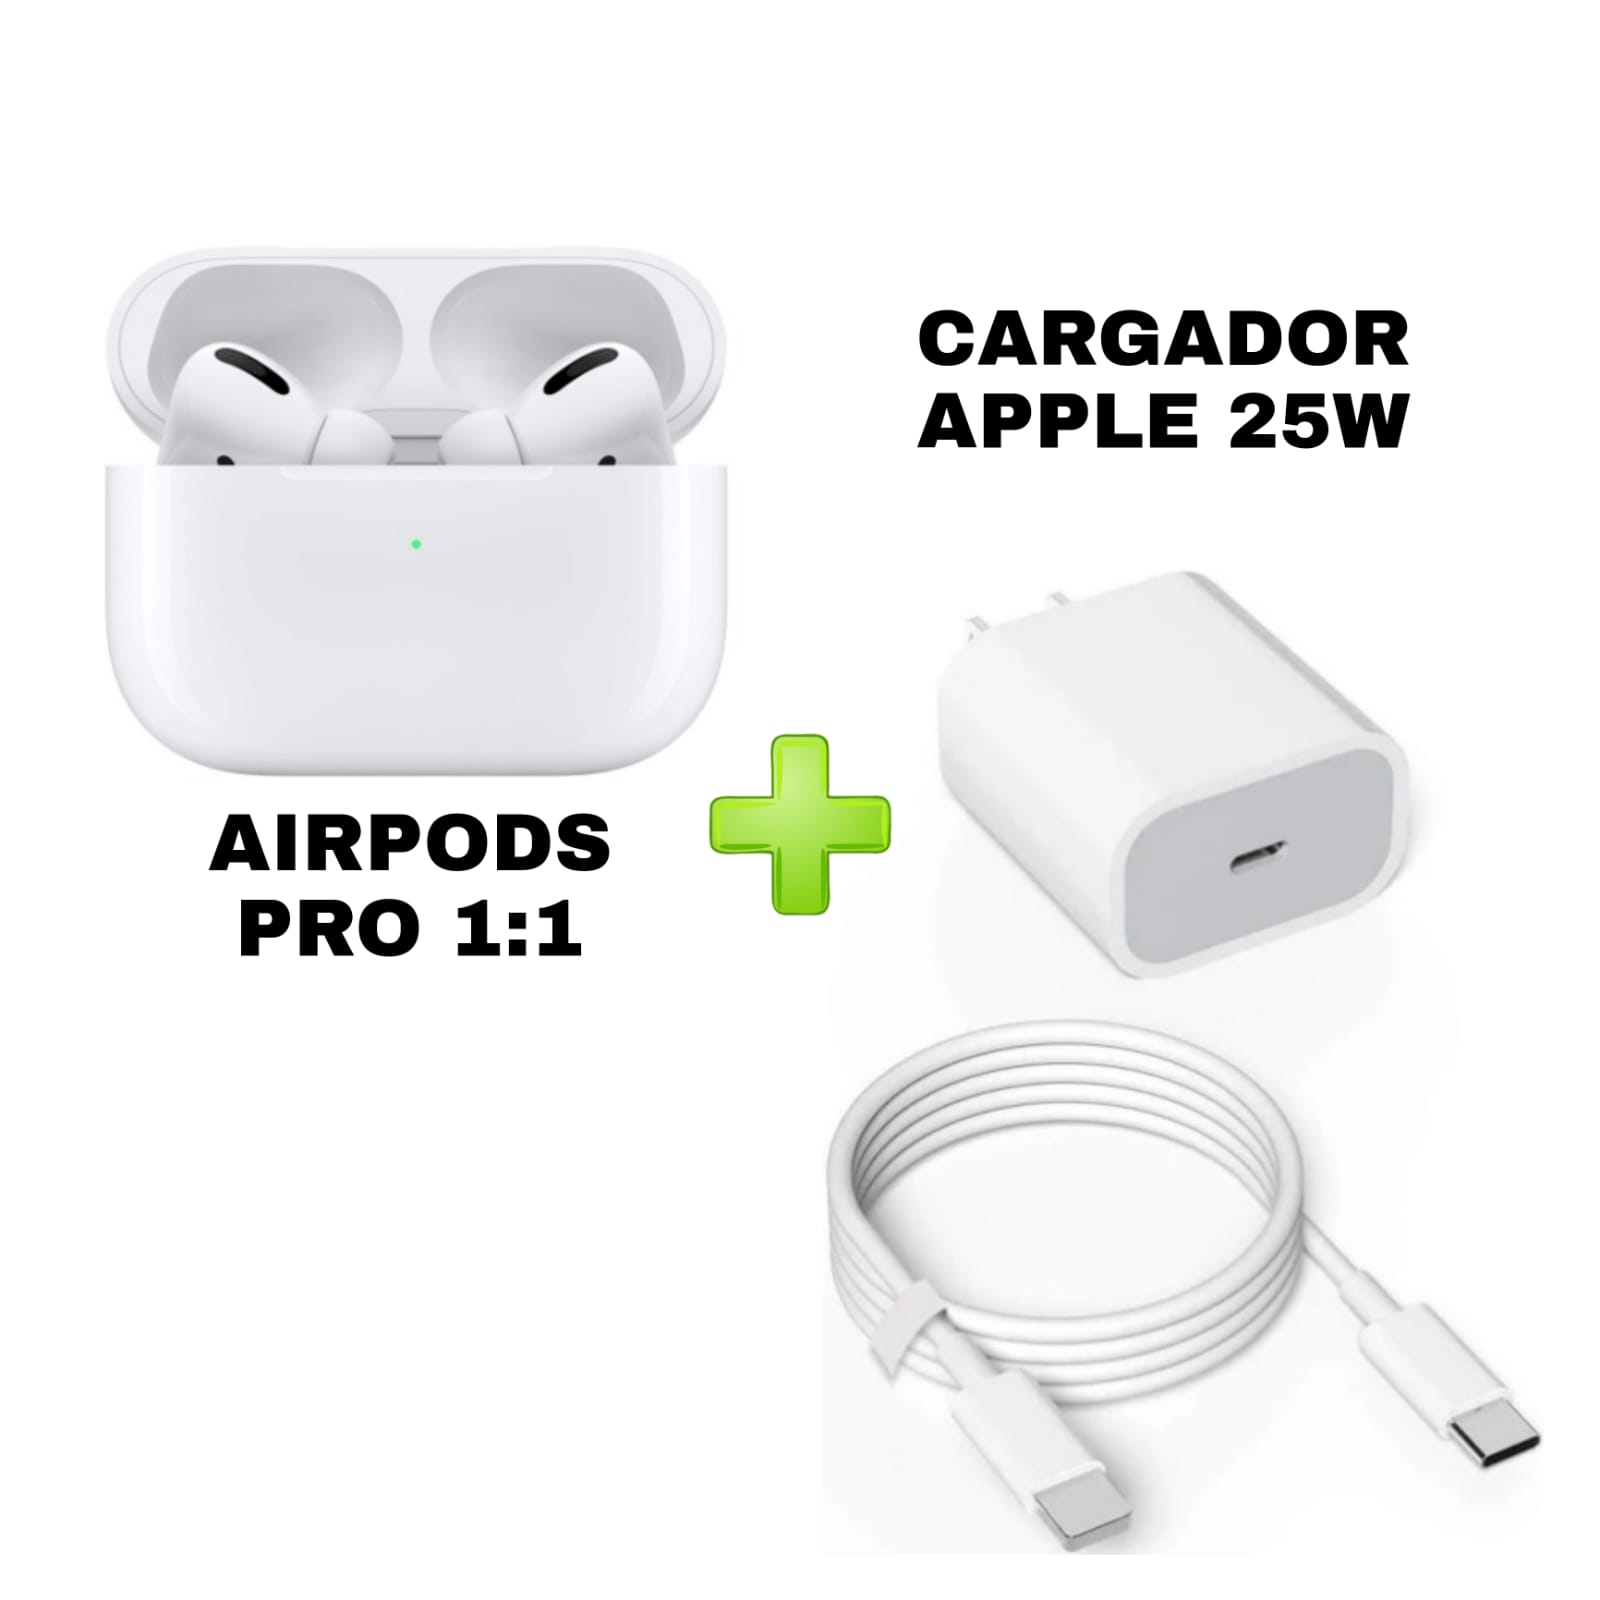 Audifonos AirPods Pro 1.1+ Cargador 25W Carga Rapida - Luegopago